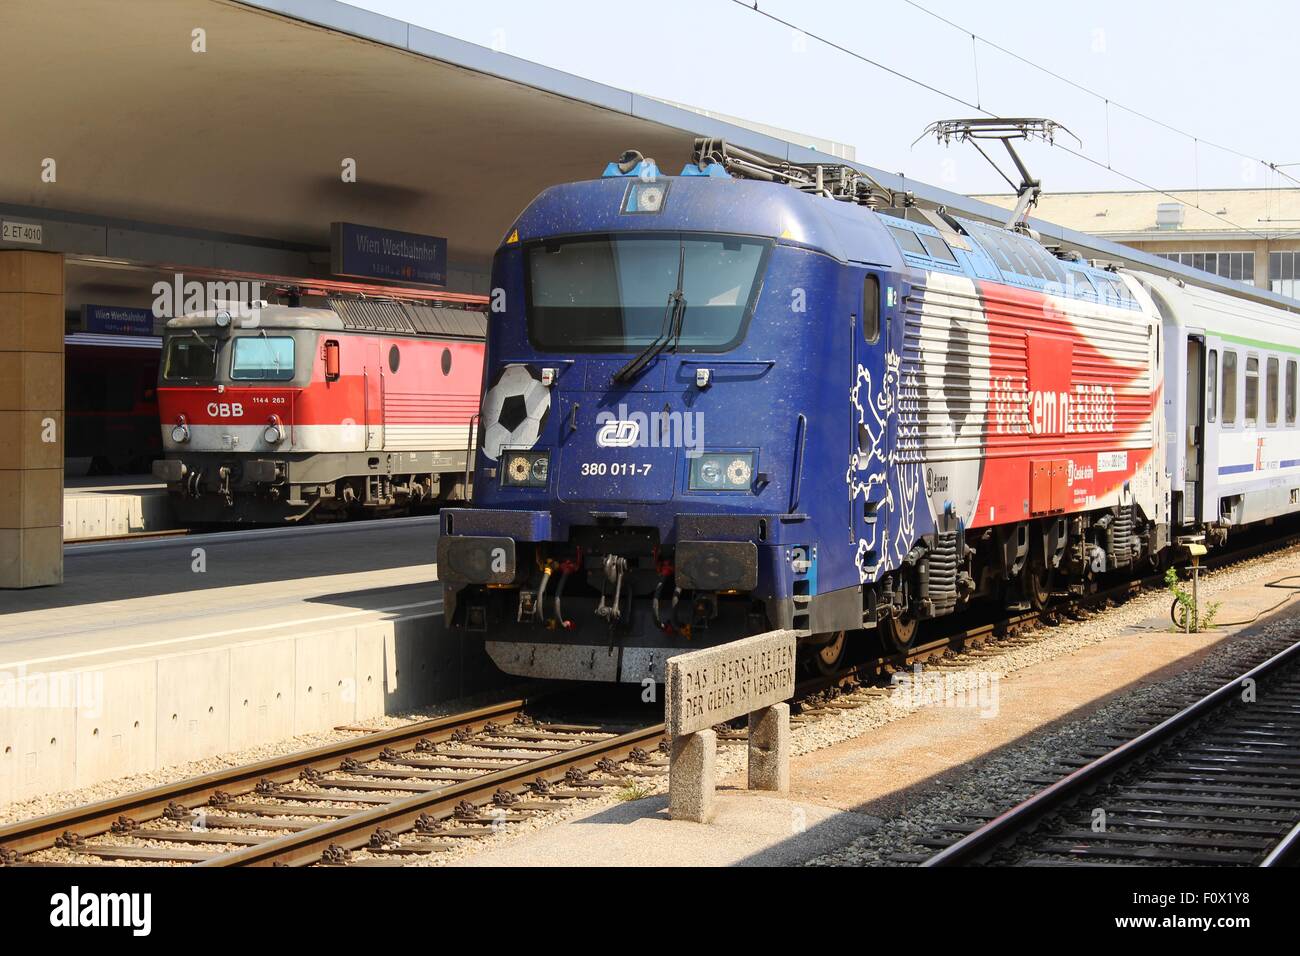 Les chemins de fer tchèques electric locomotive 380 011-7 à la gare Westbahnhof de Vienne, en Autriche avec un train pour Varsovie. Banque D'Images